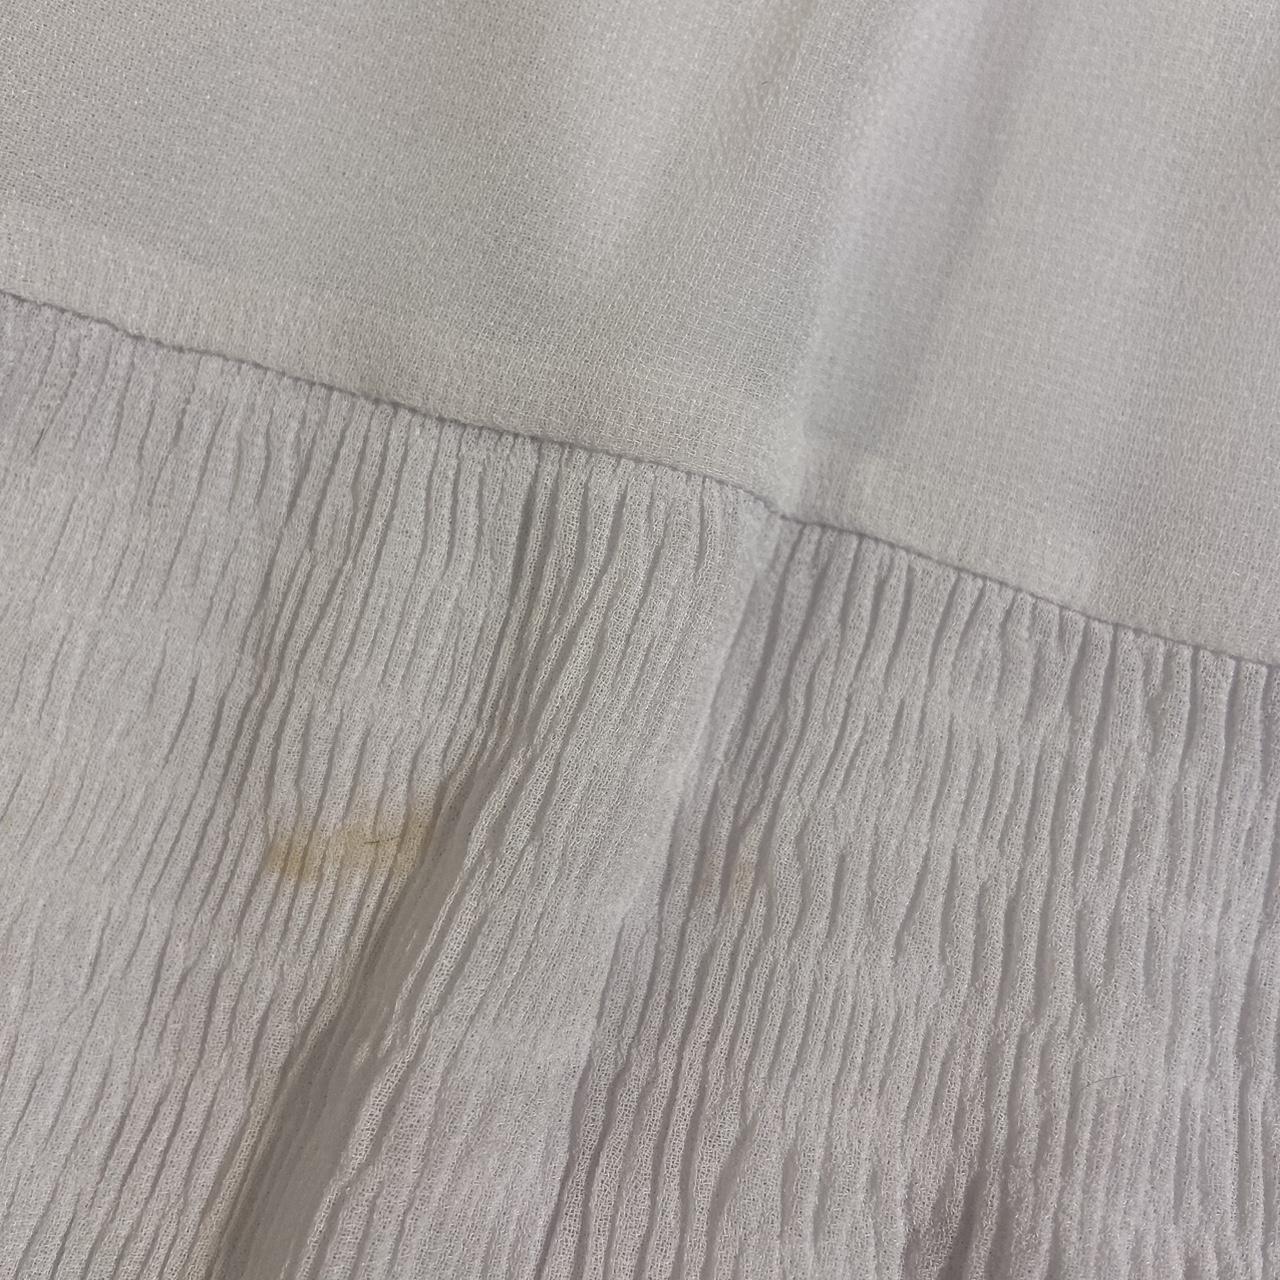 Modern white flowy full length skirt Small stain... - Depop